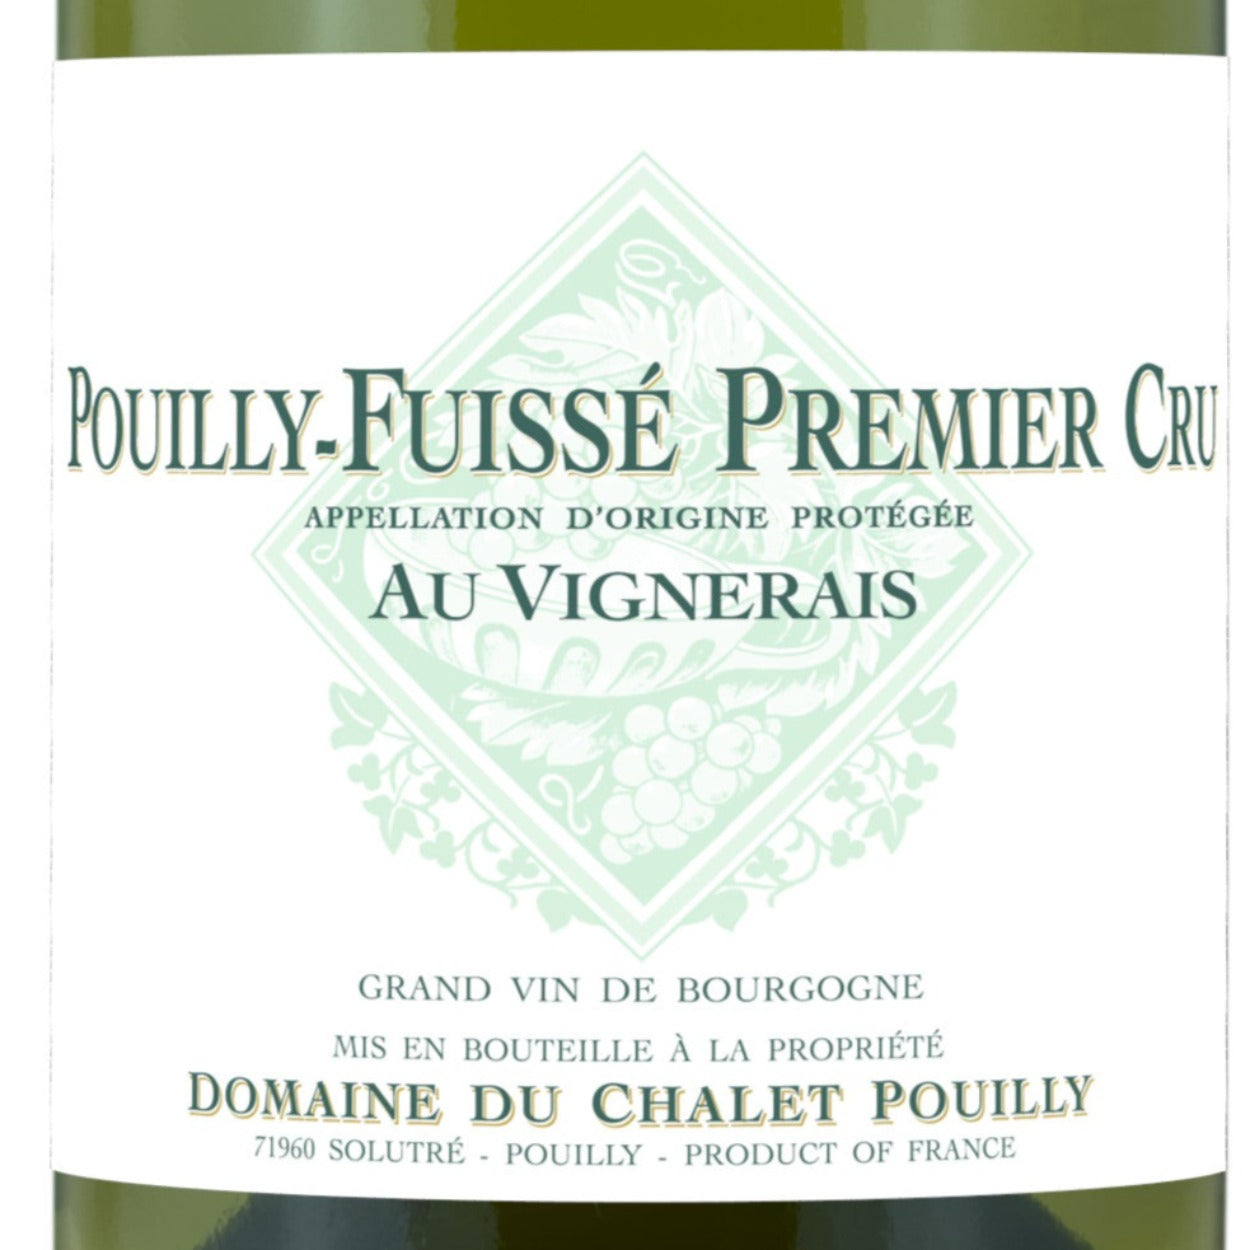 2020 Domaine du Chalet Pouilly 'Pouilly-Fuisse' Au Vignerais Premier Cru Maconnais France